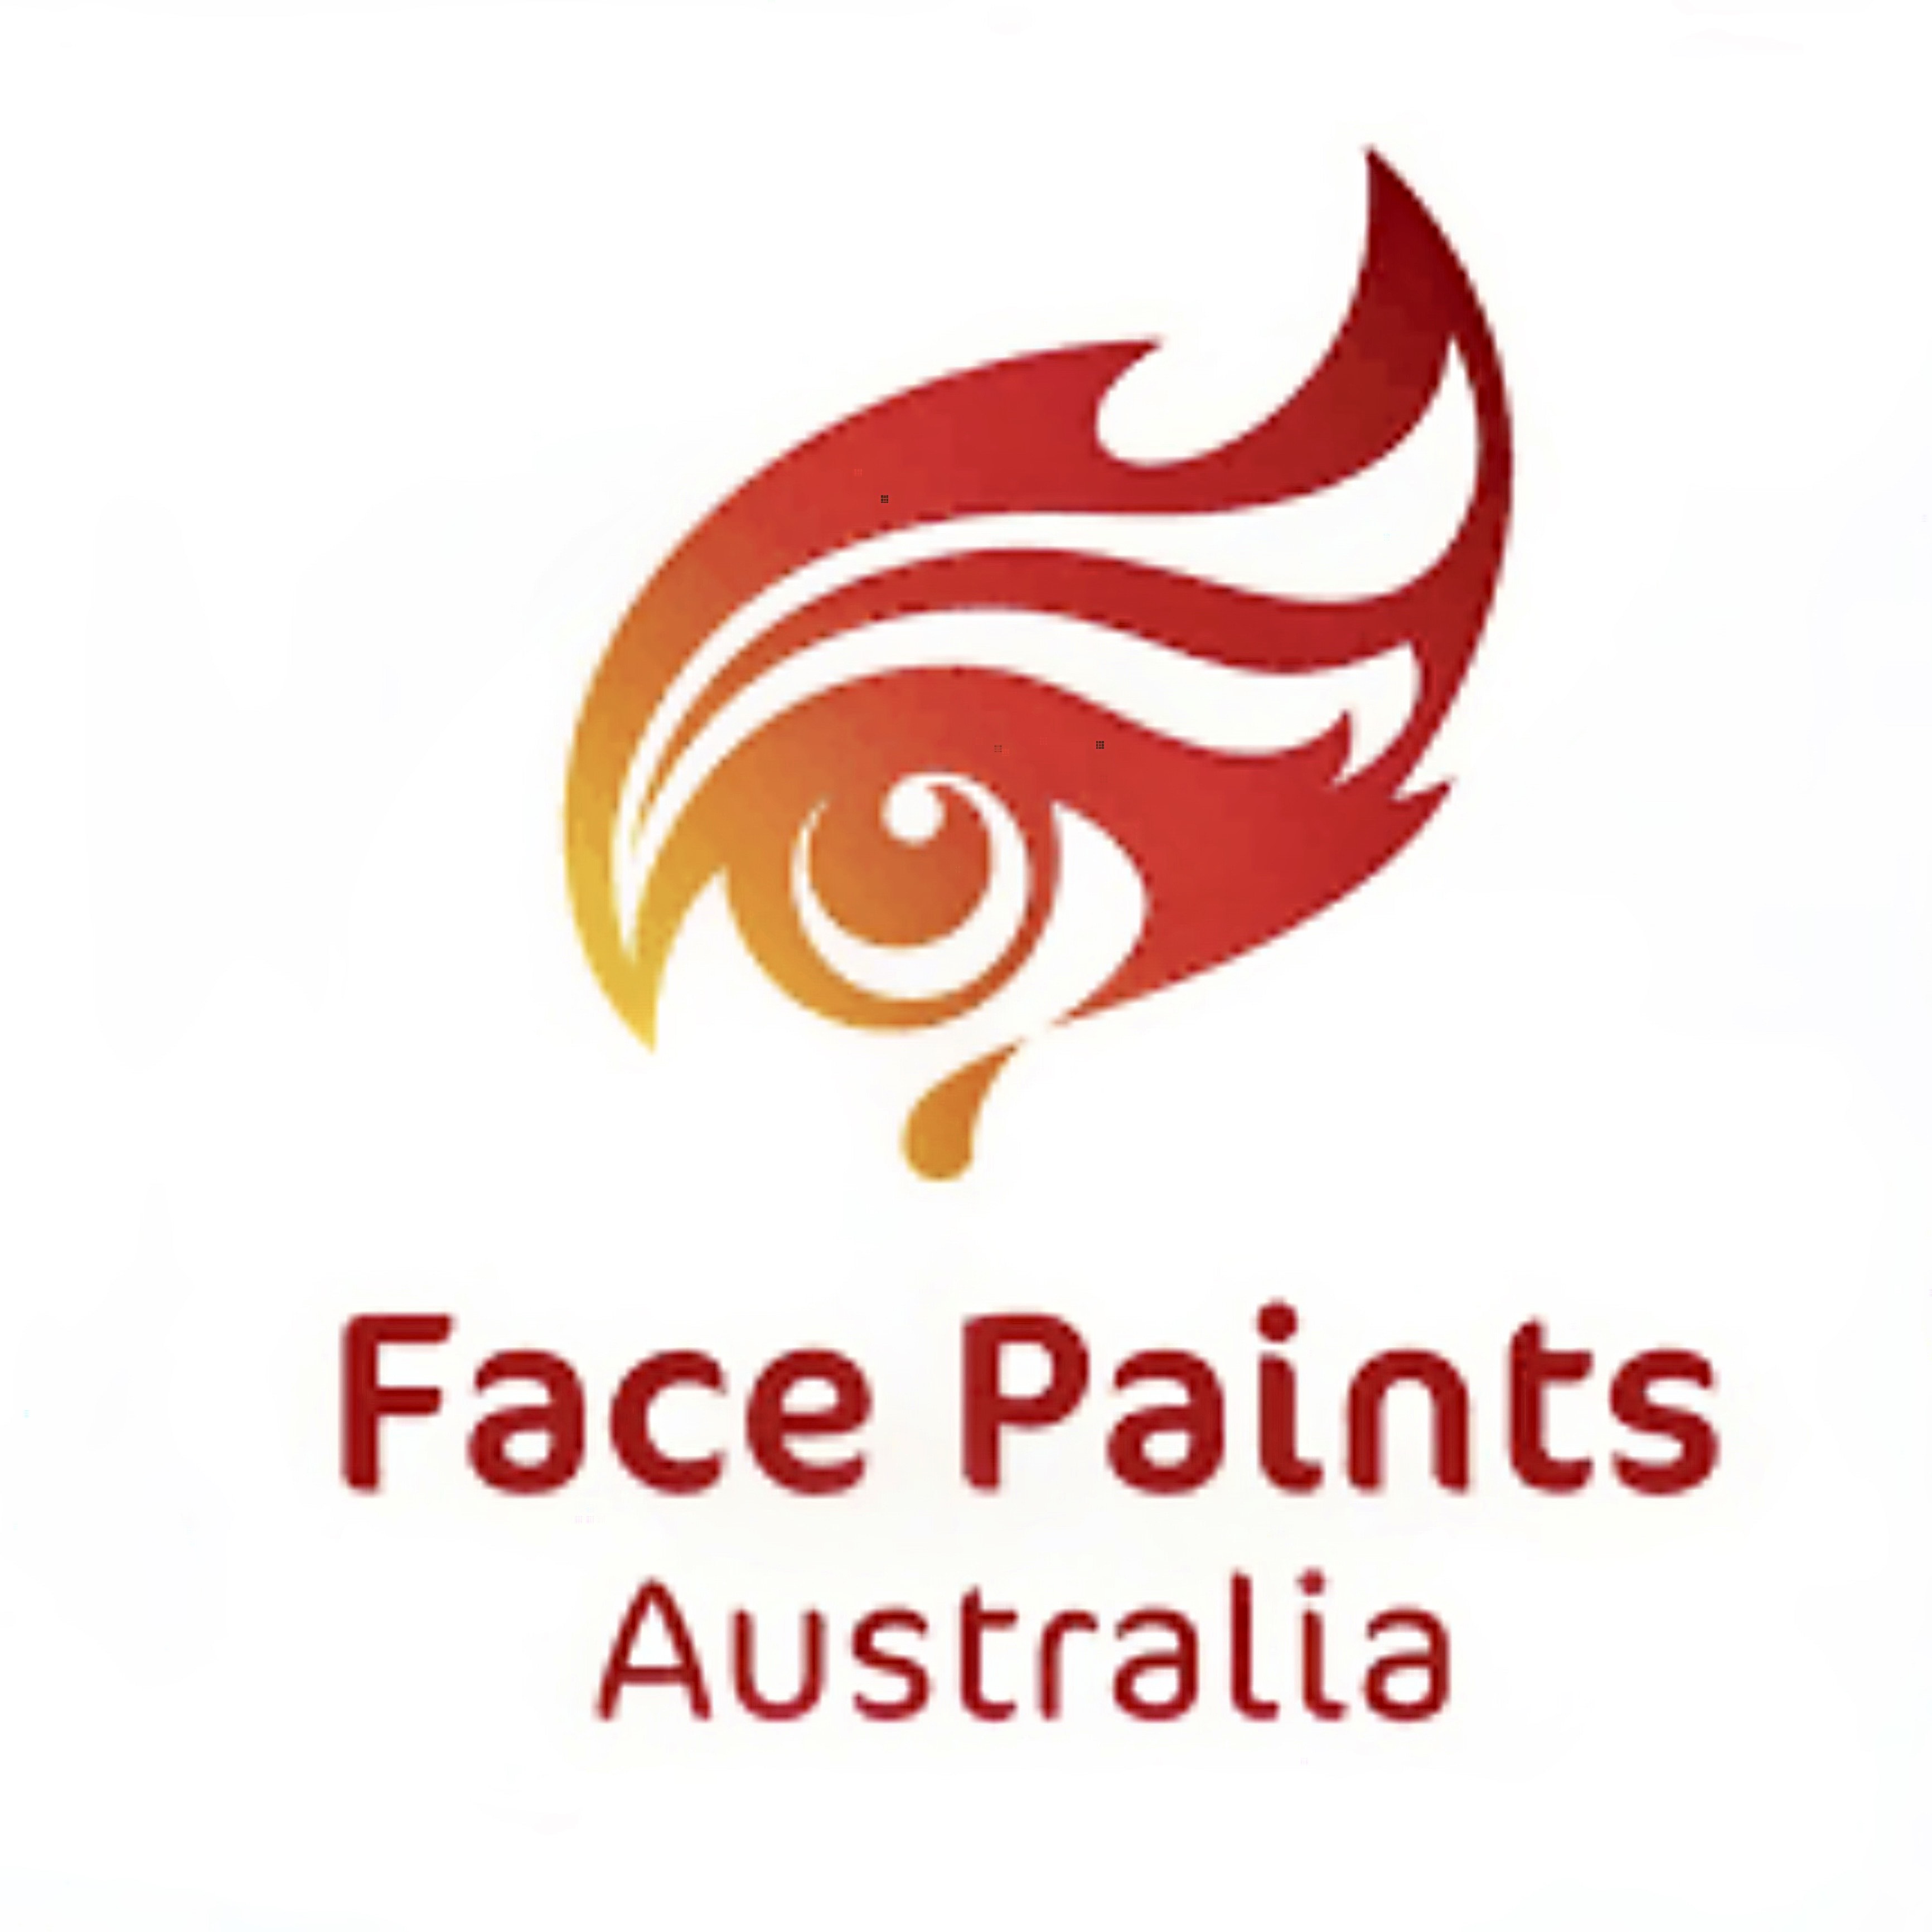 Face paints Australia